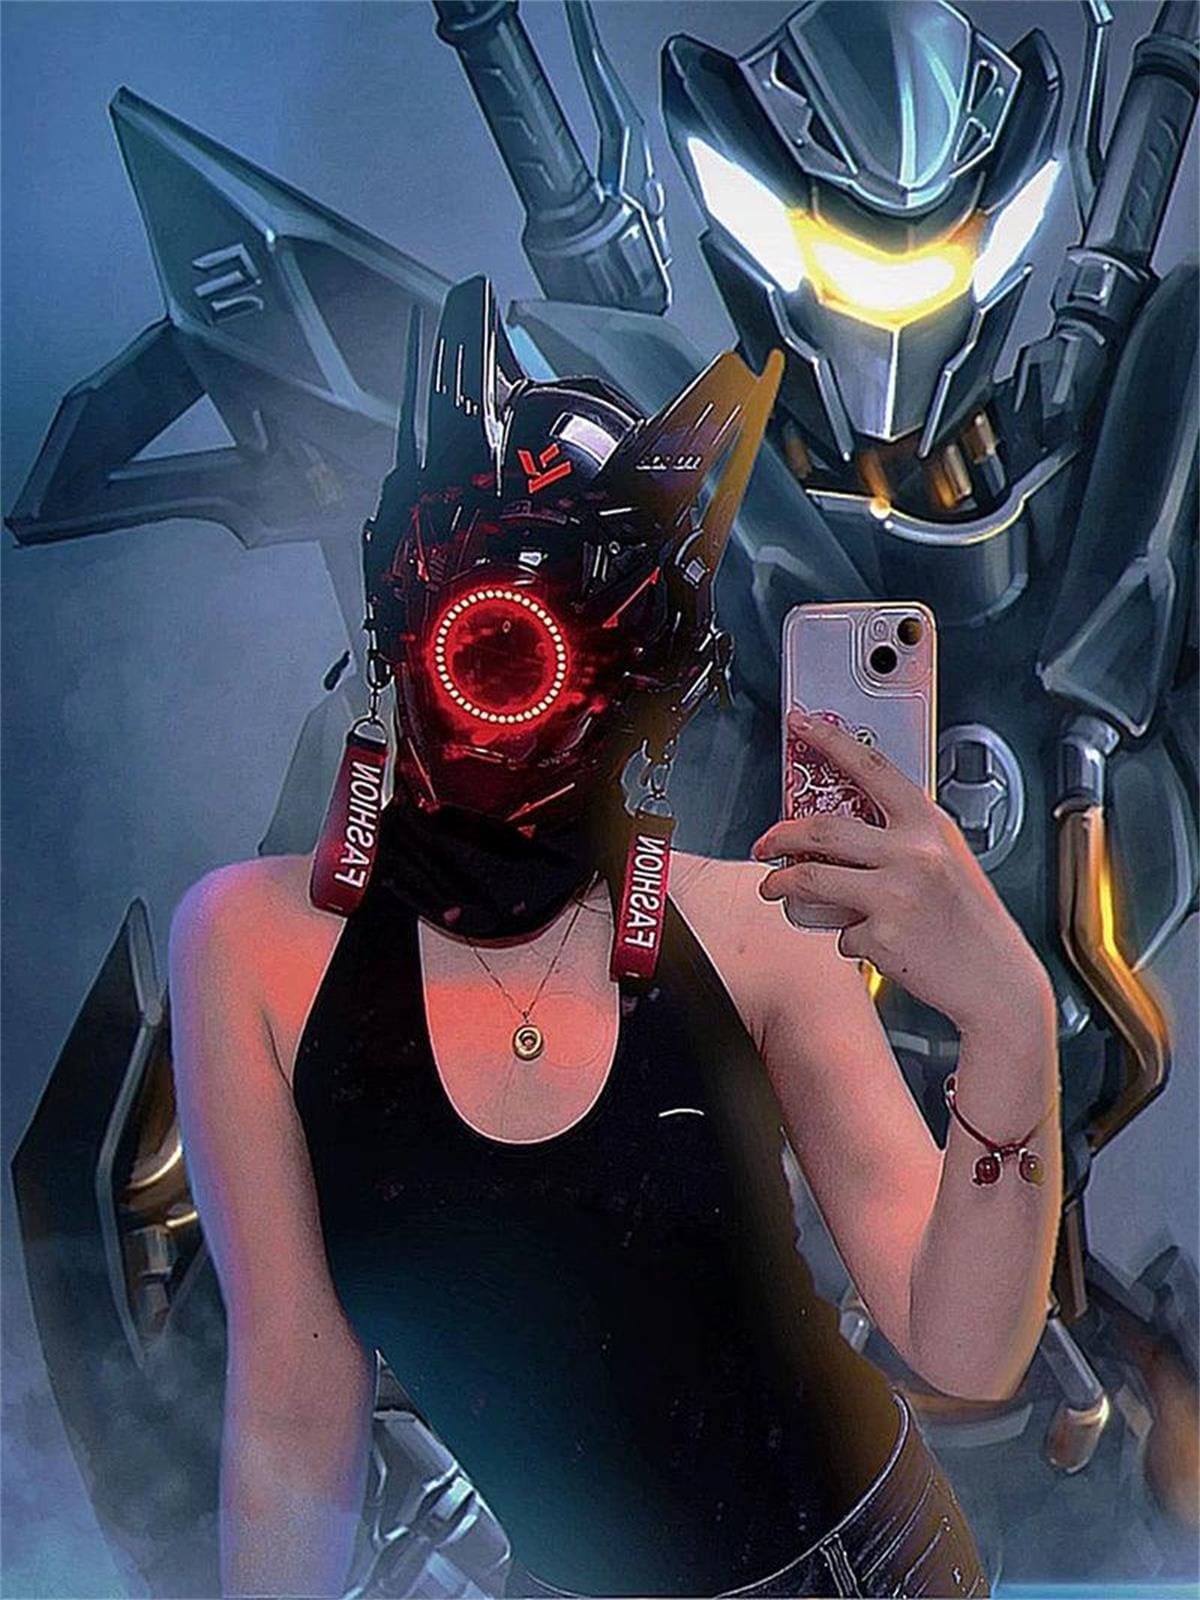 [Advanced Series] Cyberpunk Halo Mask